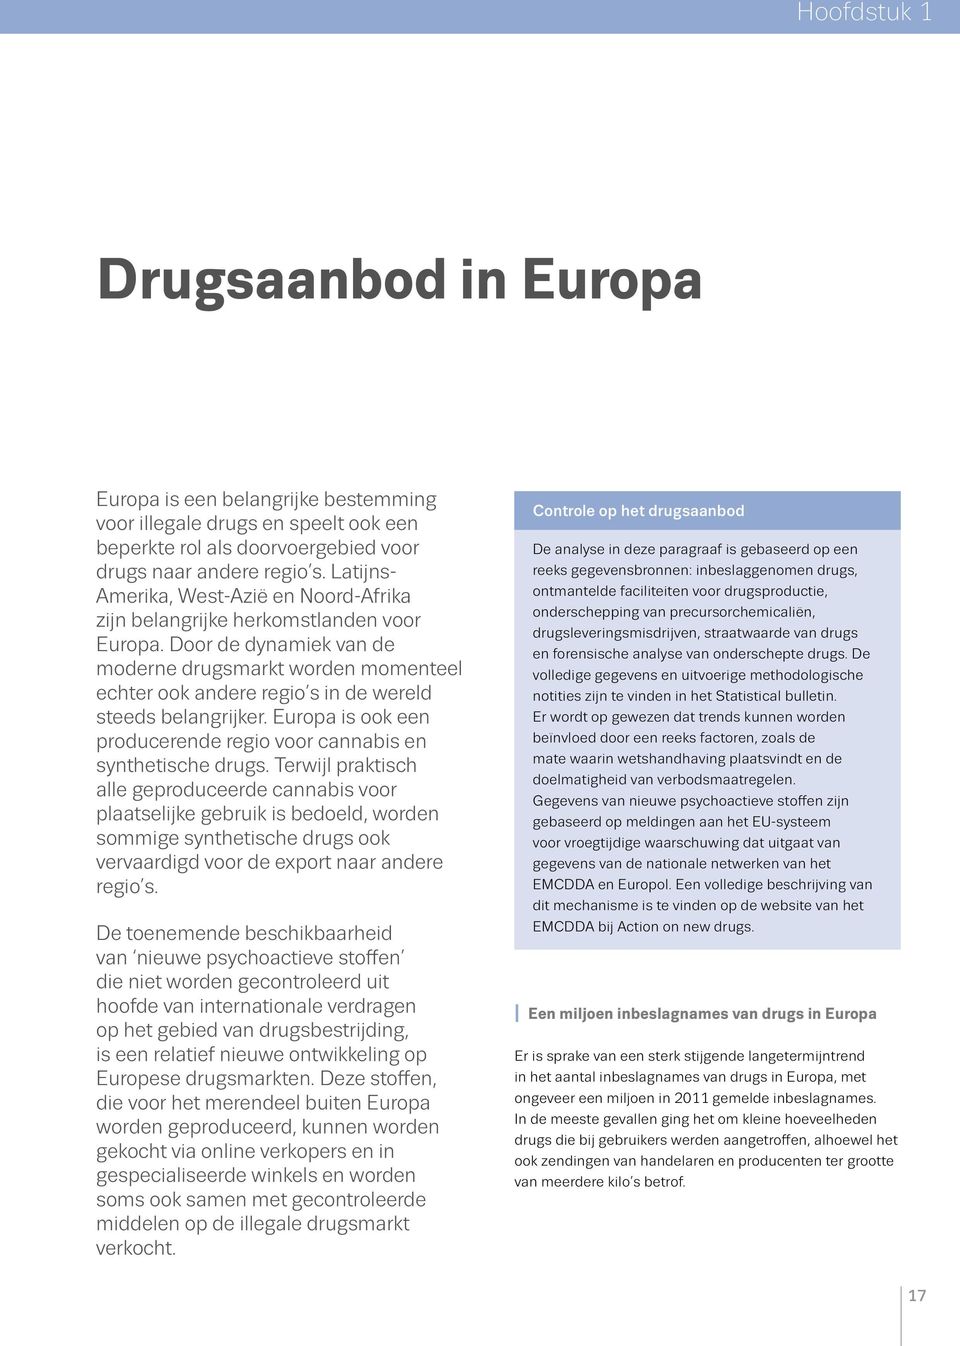 Door de dynamiek van de moderne drugsmarkt worden momenteel echter ook andere regio s in de wereld steeds belangrijker. Europa is ook een producerende regio voor cannabis en synthetische drugs.